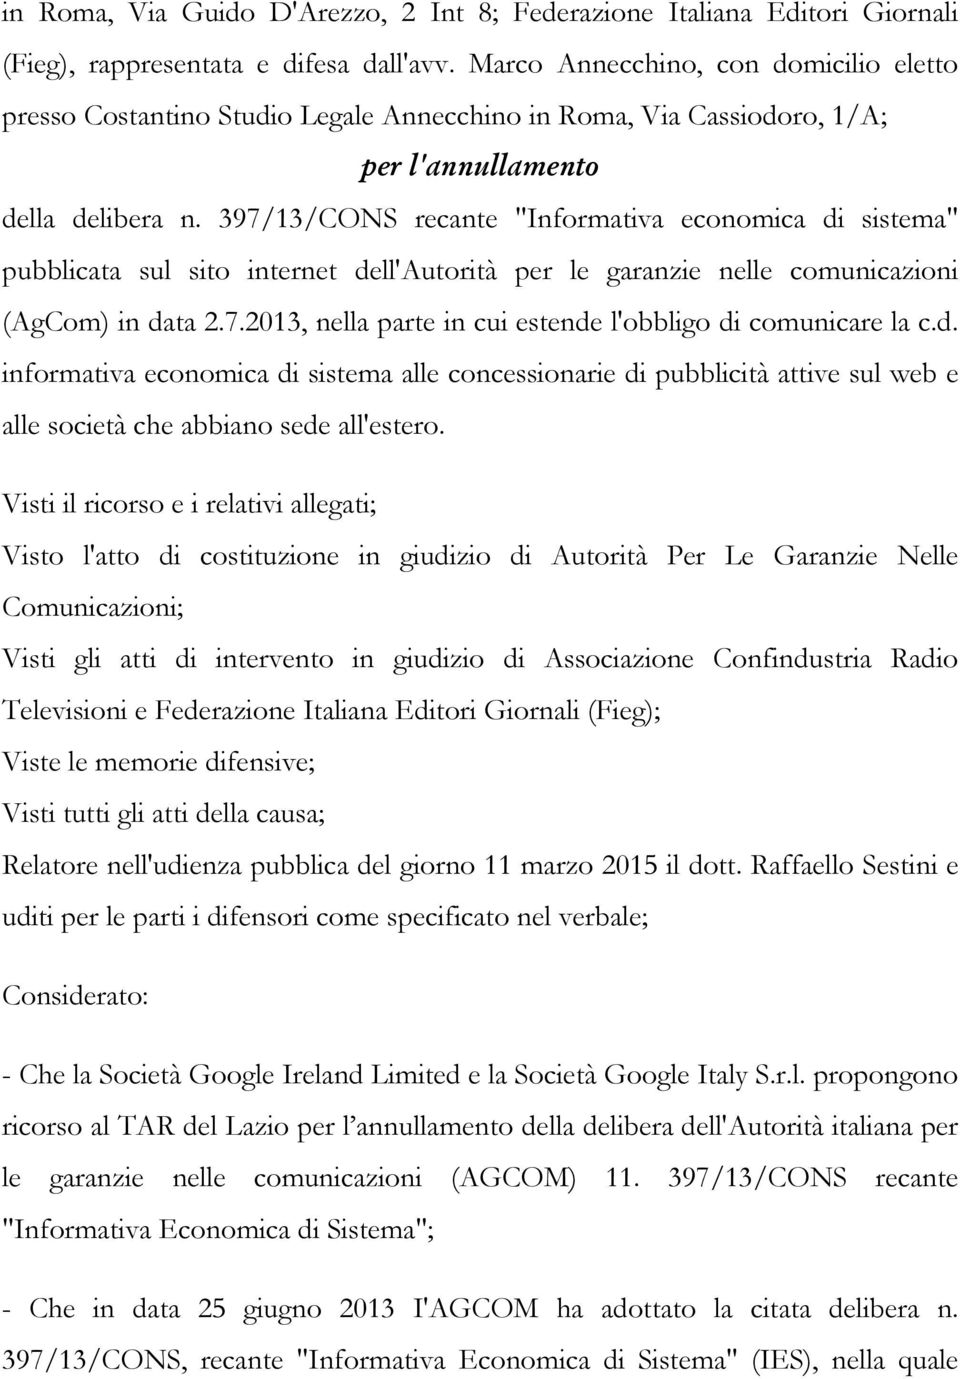 397/13/CONS recante "Informativa economica di sistema" pubblicata sul sito internet dell'autorità per le garanzie nelle comunicazioni (AgCom) in data 2.7.2013, nella parte in cui estende l'obbligo di comunicare la c.